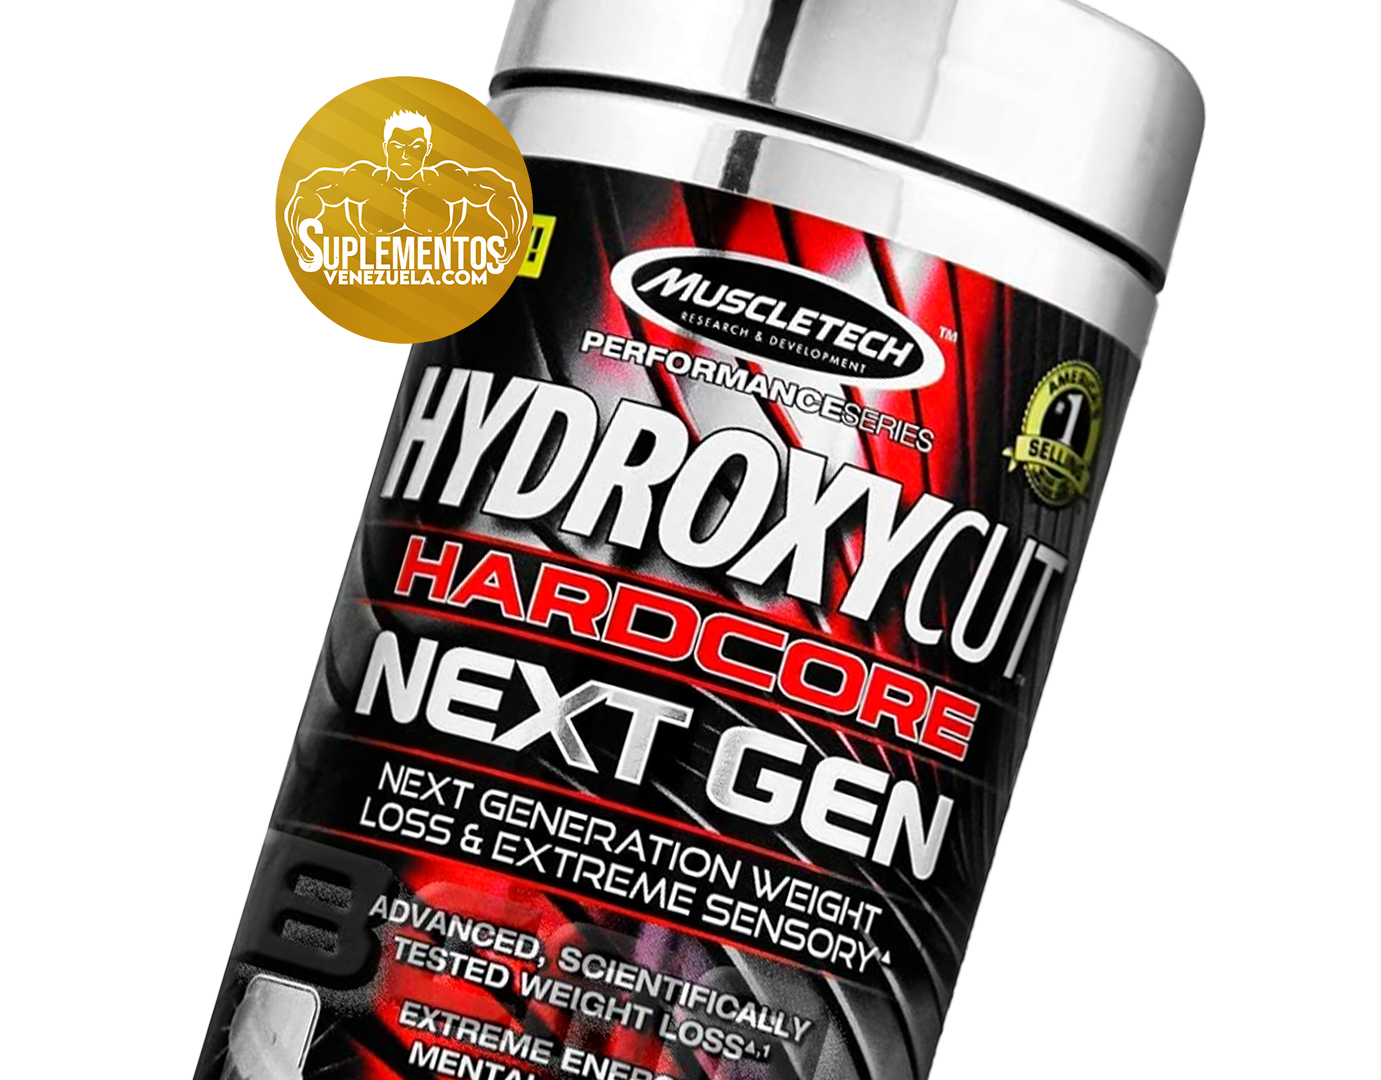 Performance Series Hydroxycut Hardcore Next GEN 100ct US -MUSCLE TECH - QUEMADORES DE GRASA.